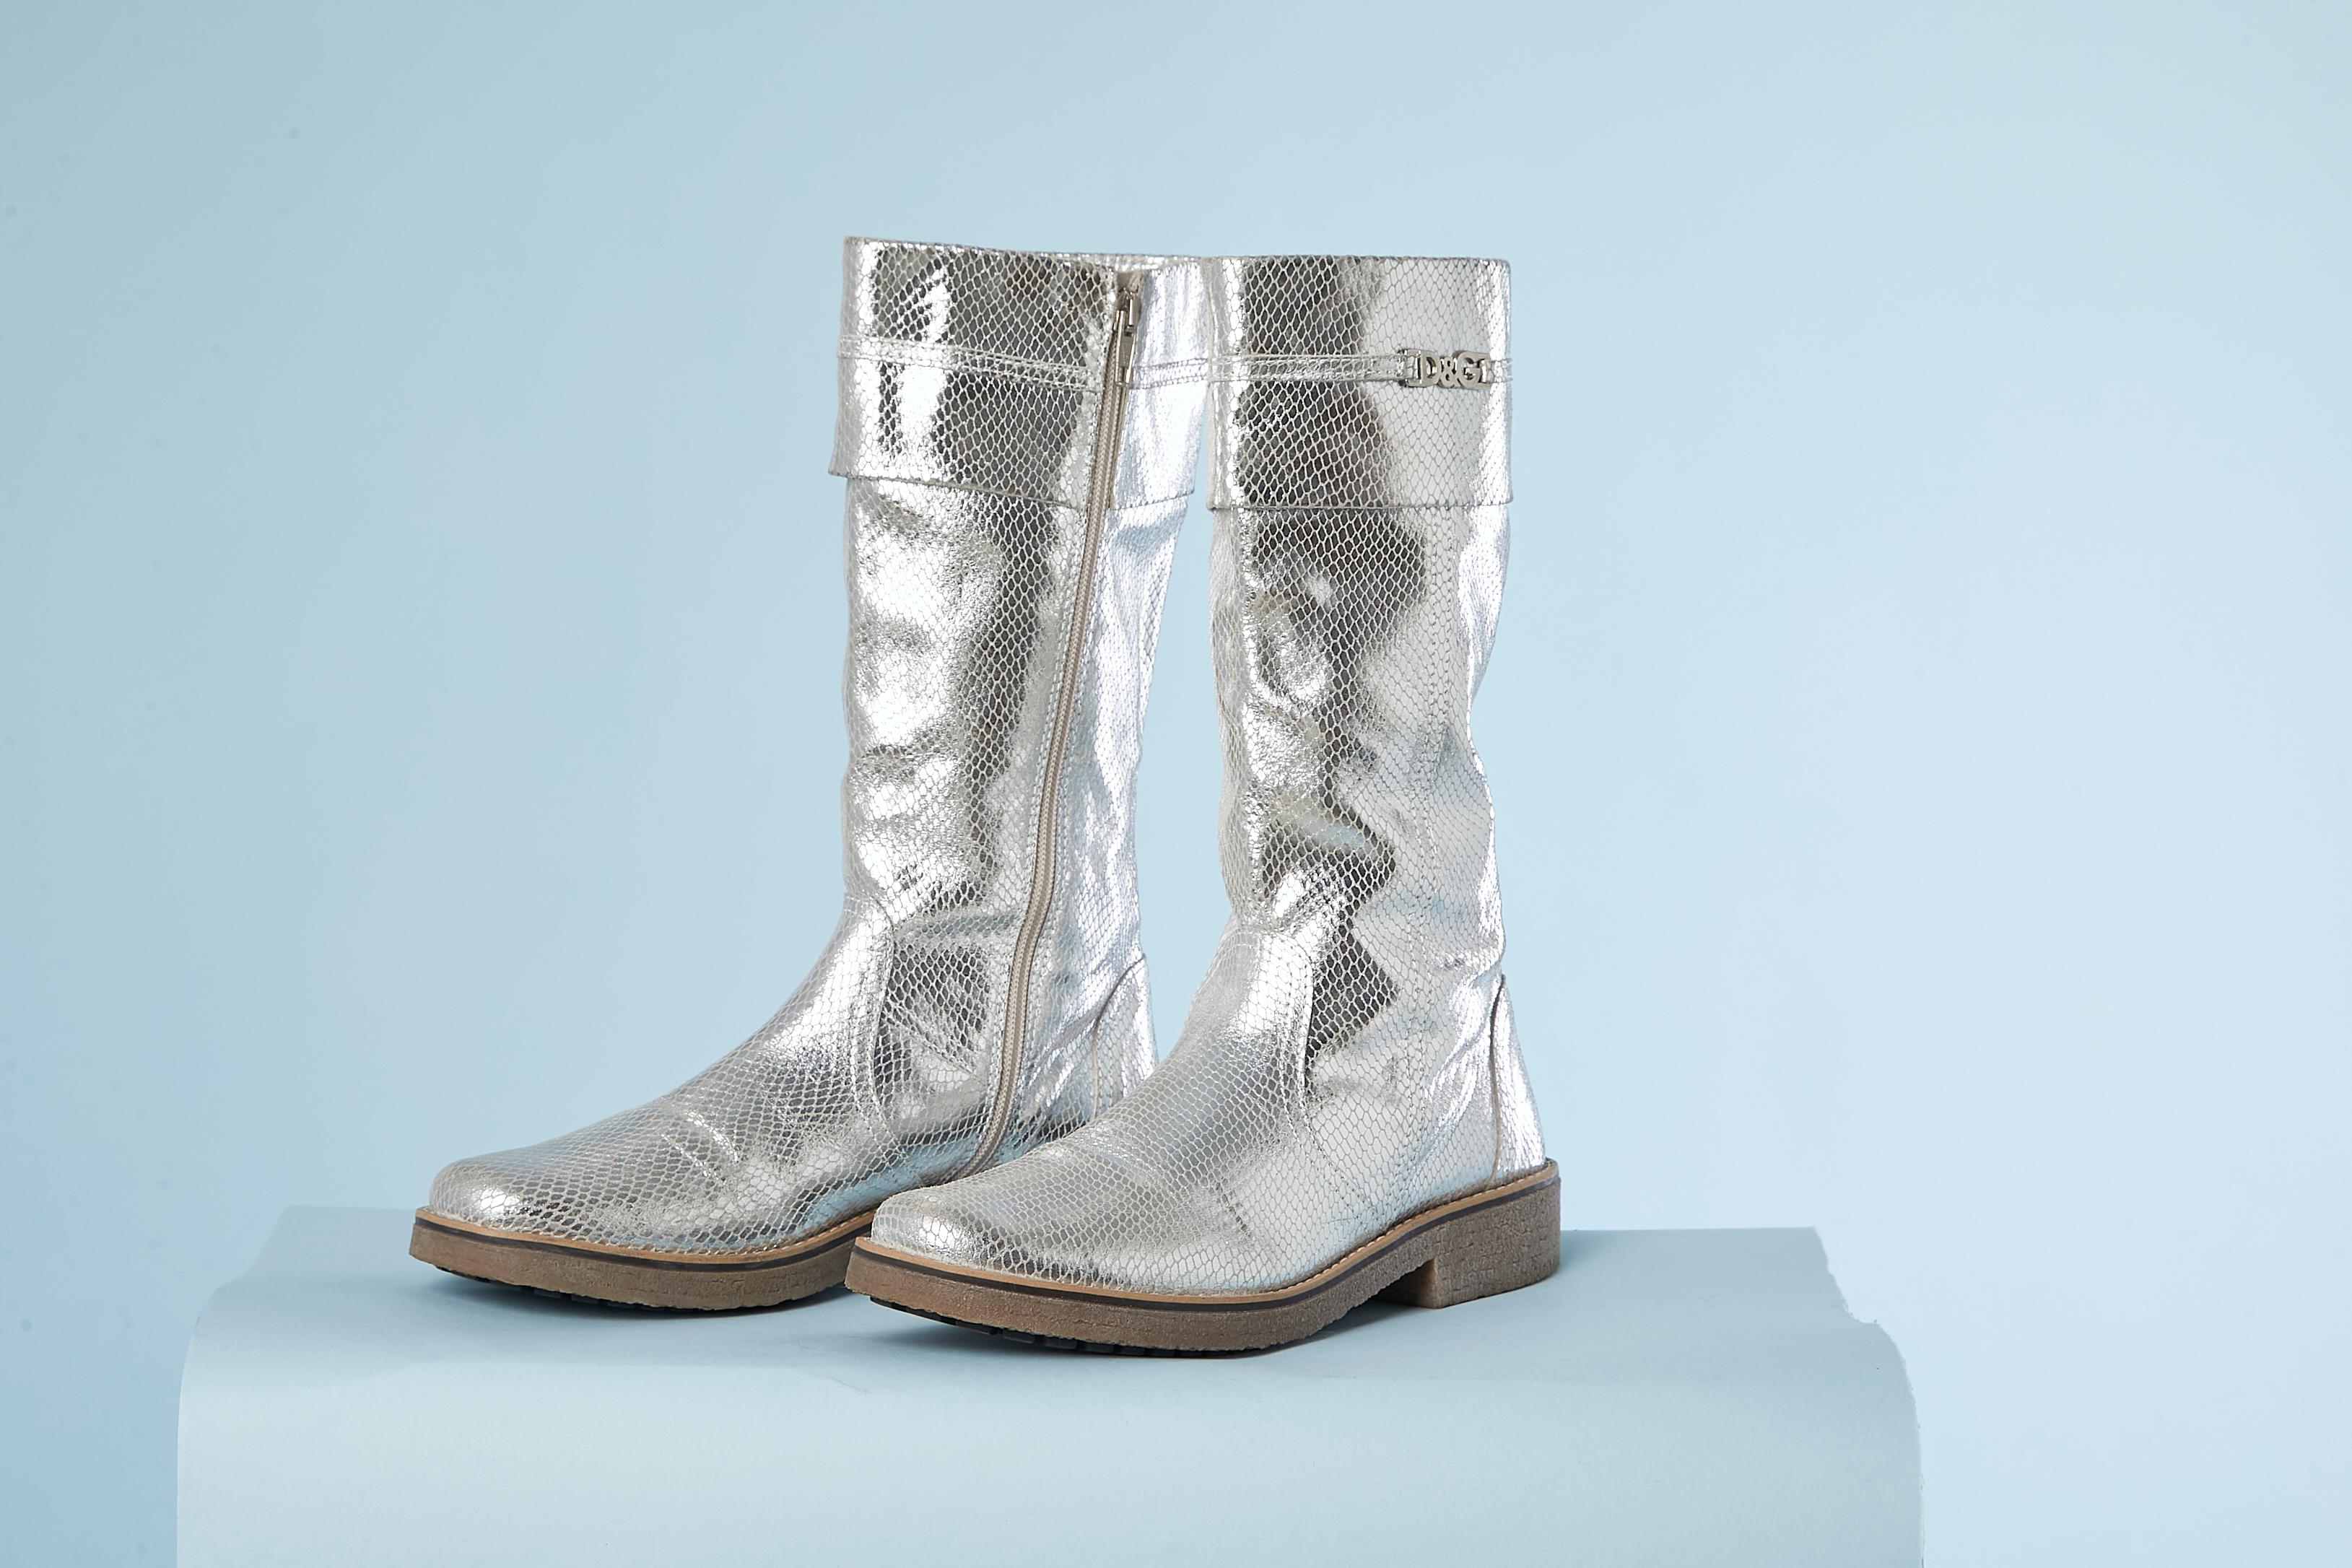 Silberne Lederstiefel mit Pythonlack und Kreppsohle. NEU 
Schuhe Größe 40 (it) 41 (Fr) Metallic-Marke auf der Oberseite.
Höhe der Stiefel= 32 cm